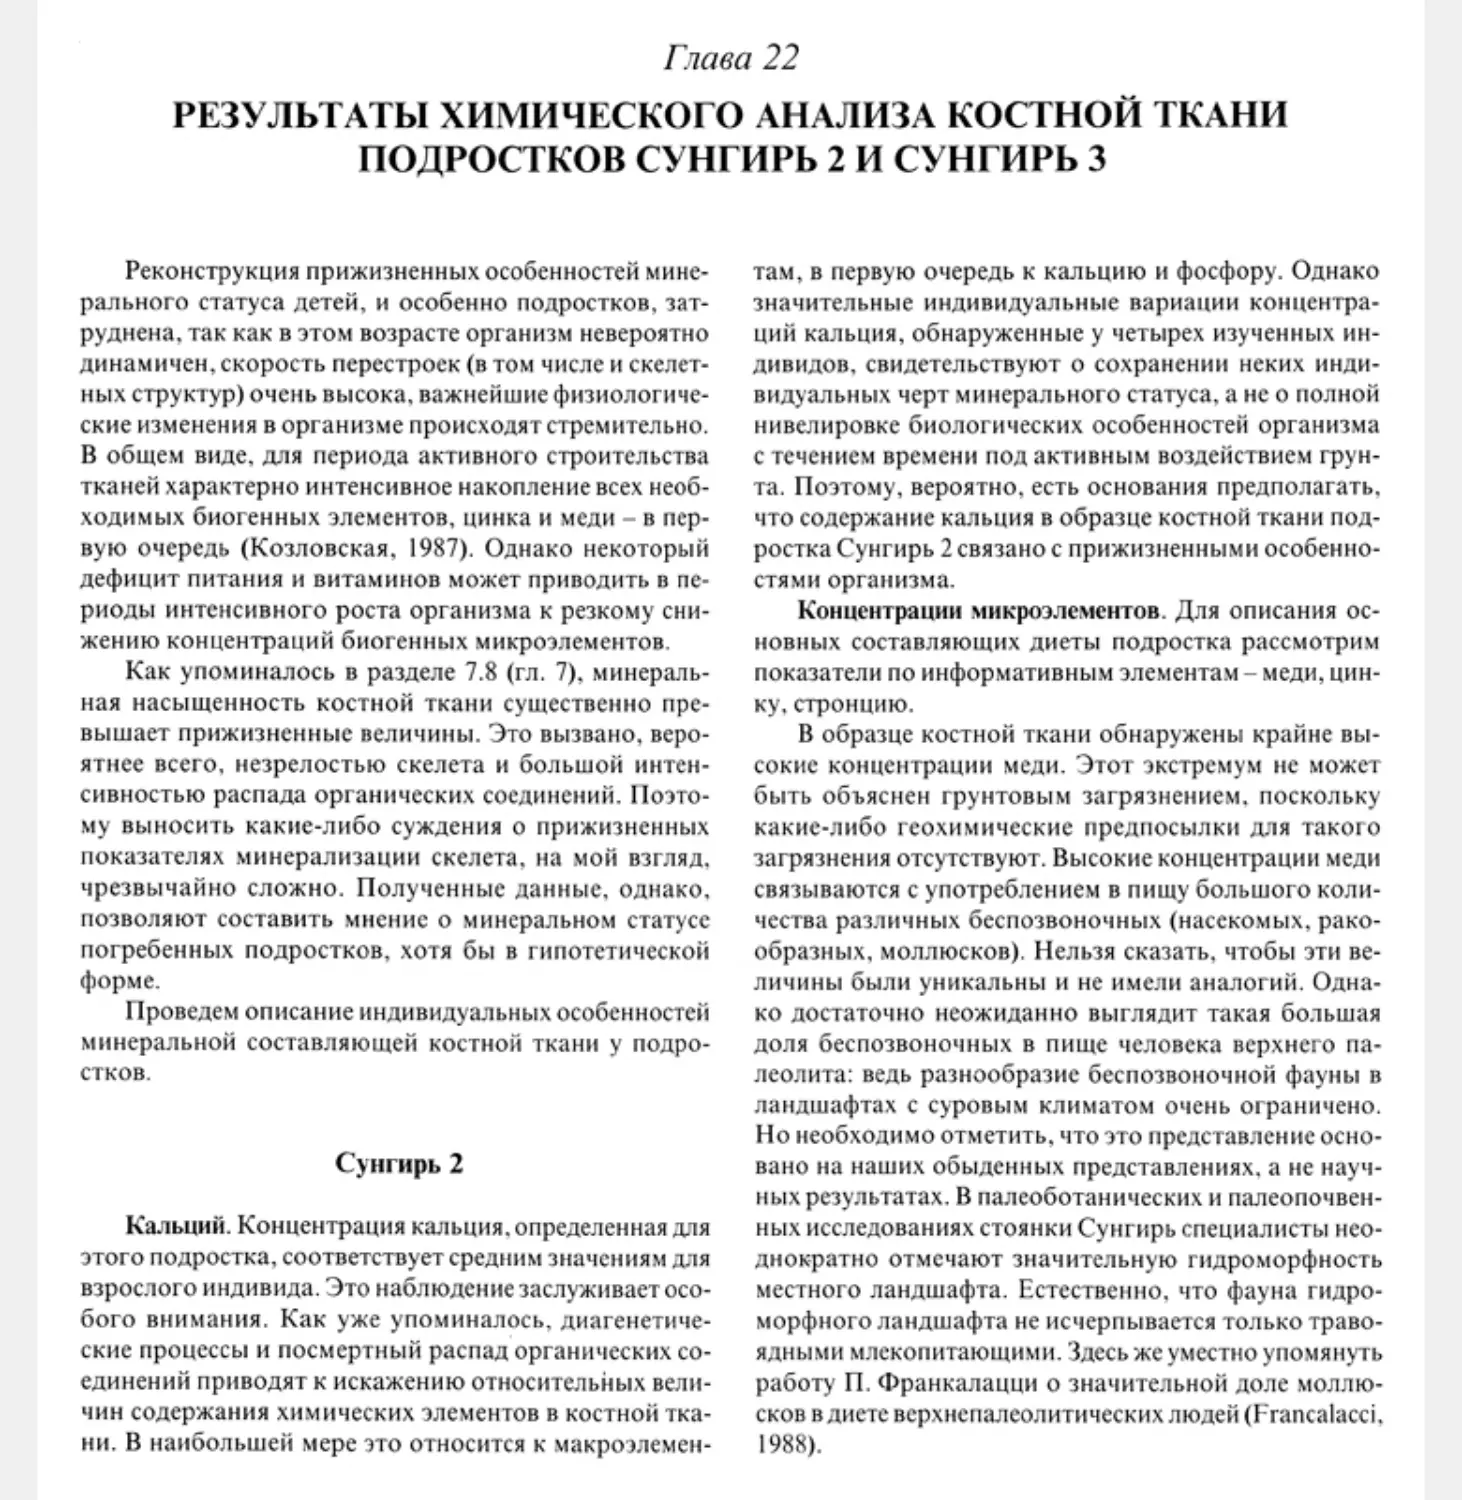 Глава 22. Результаты химического анализа костной ткани подростков Сунгирь 2 и Сунгирь 3. М.В. Козловская